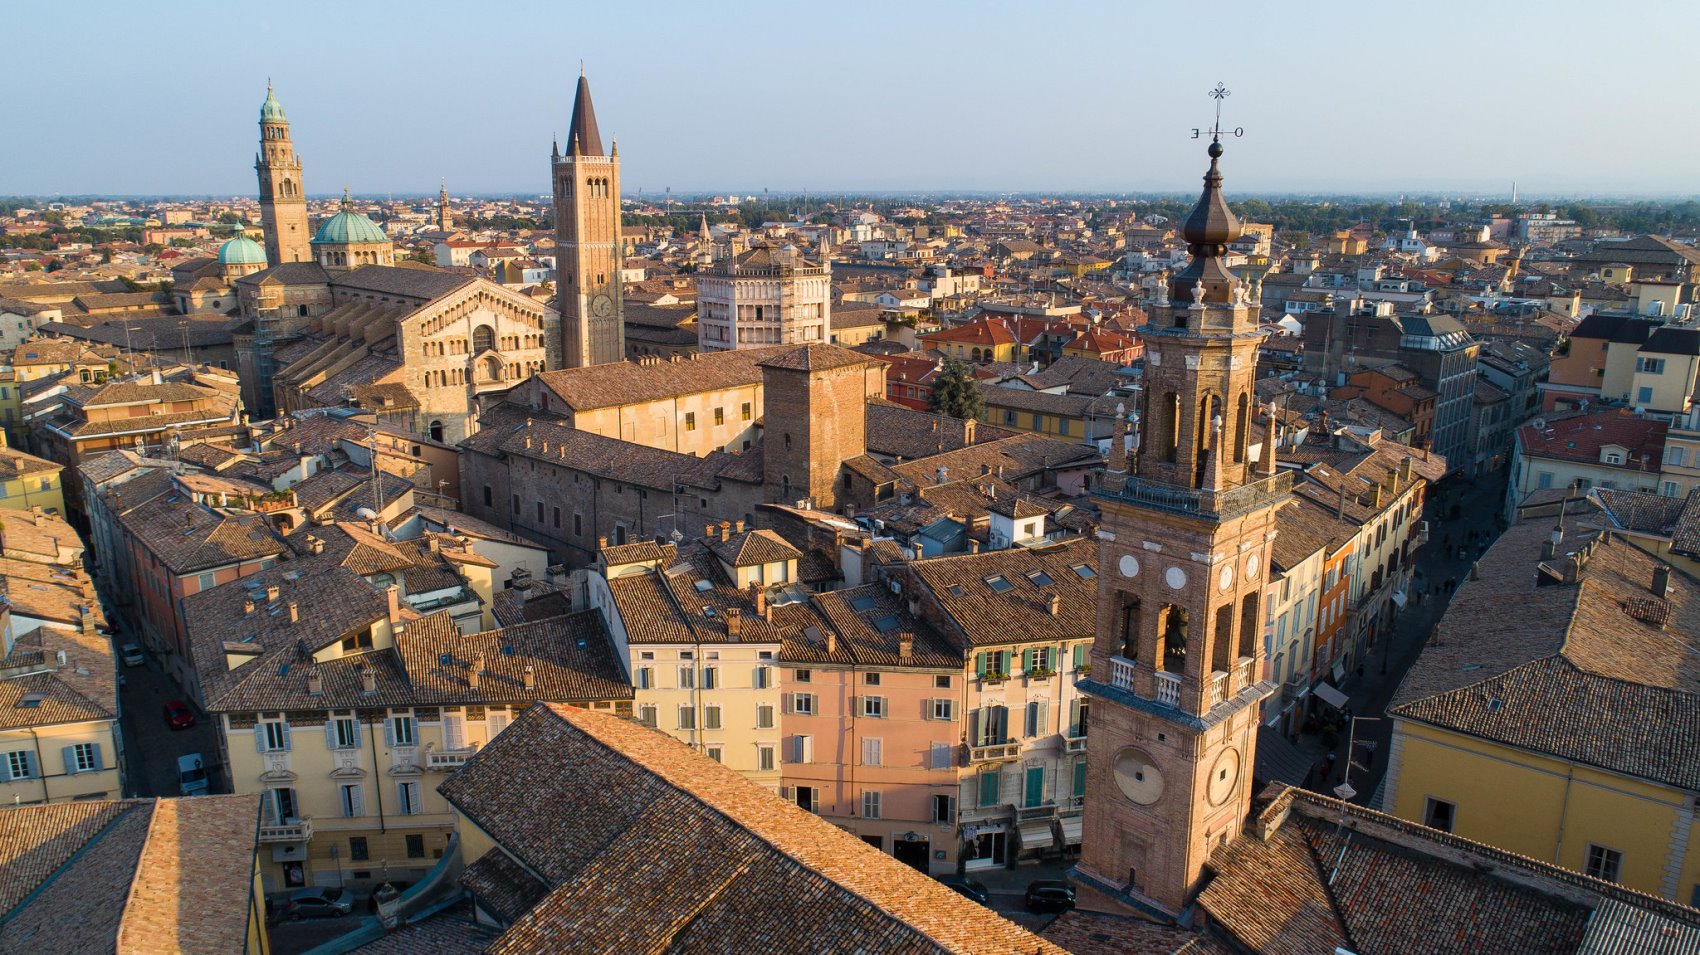 Sviluppo turistico e crescita sostenibile: dati e prospettive a Parma e in Emilia